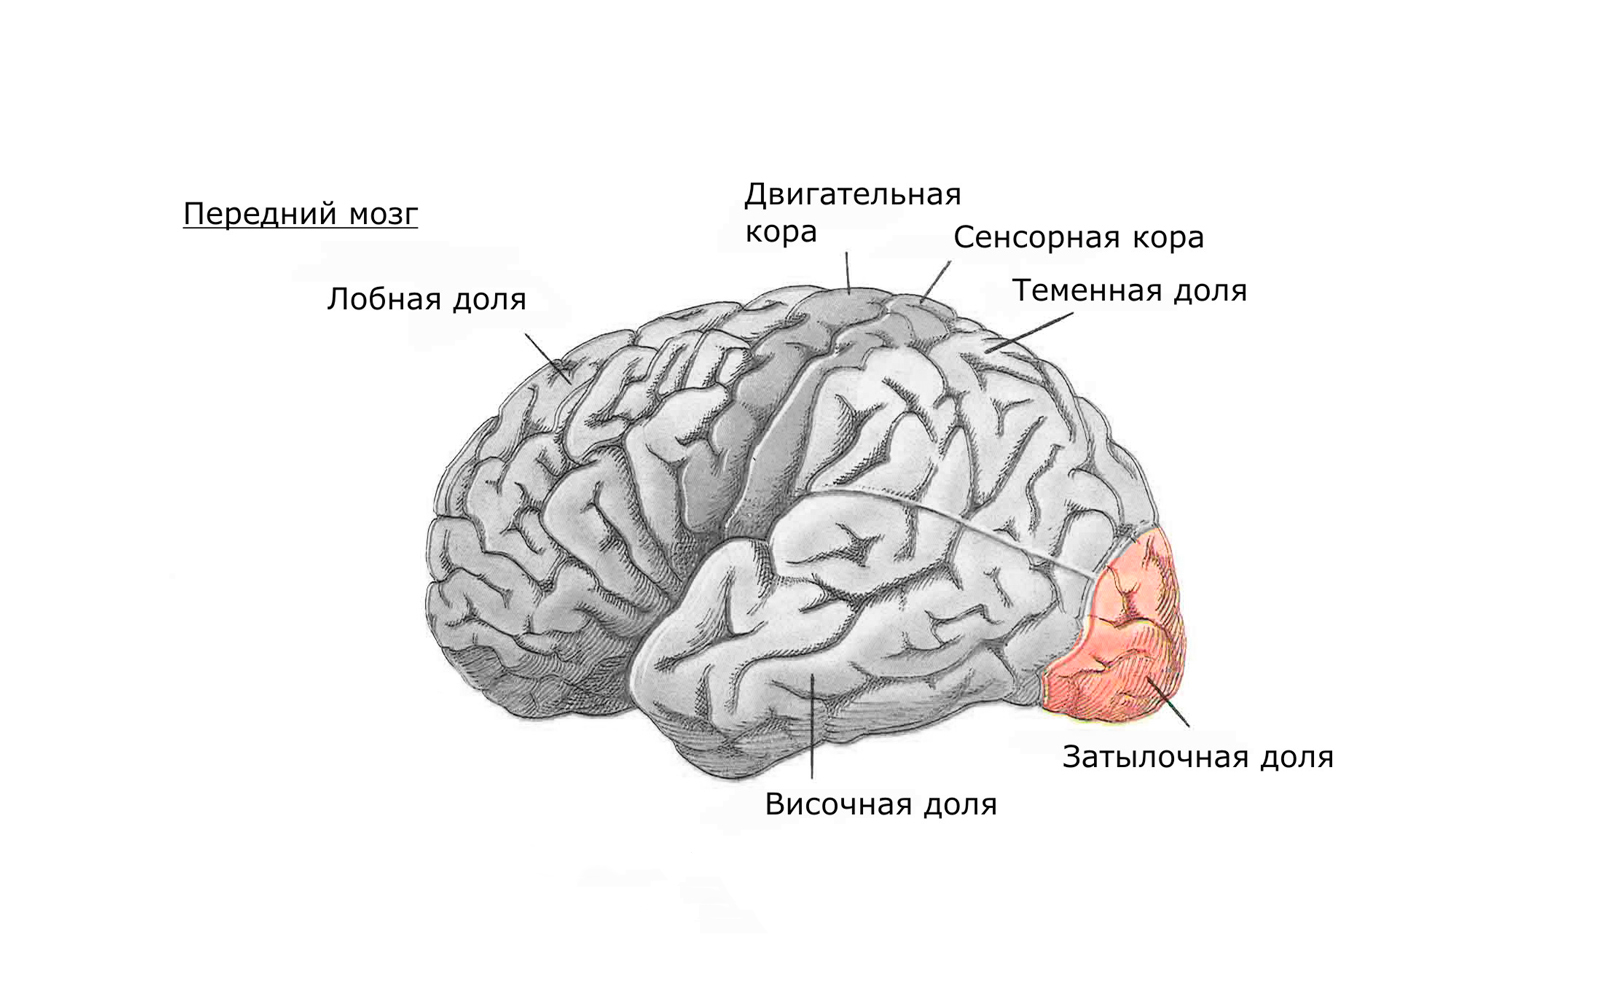 Передний мозг